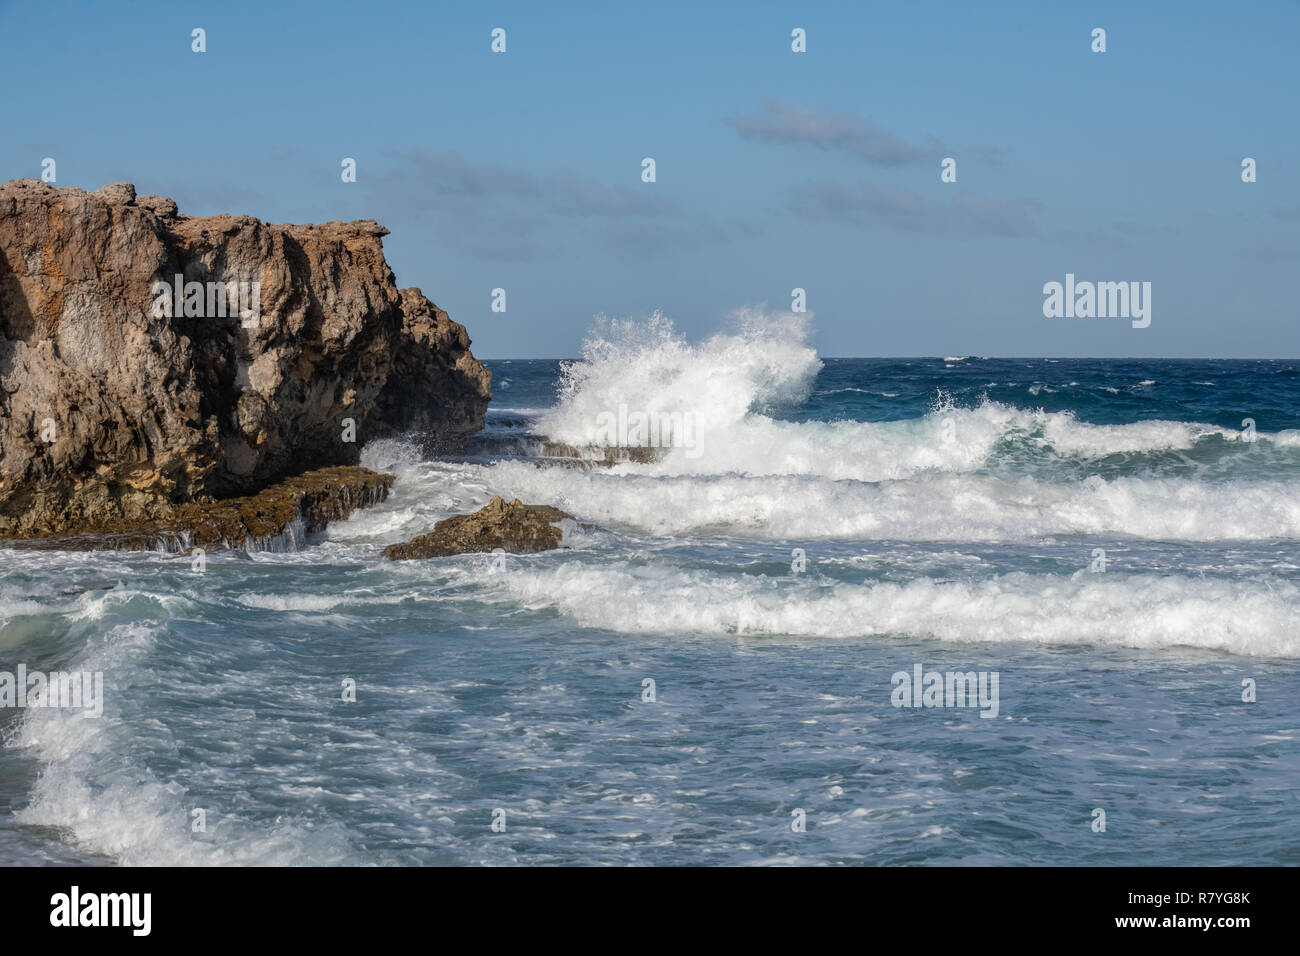 Onde si infrangono in un dirupo - acquamarina e il blu delle onde che si infrangono sulla battigia in rocce sulla costa di Aruba - Dos playa beach nel parco nazionale di Arikok Foto Stock